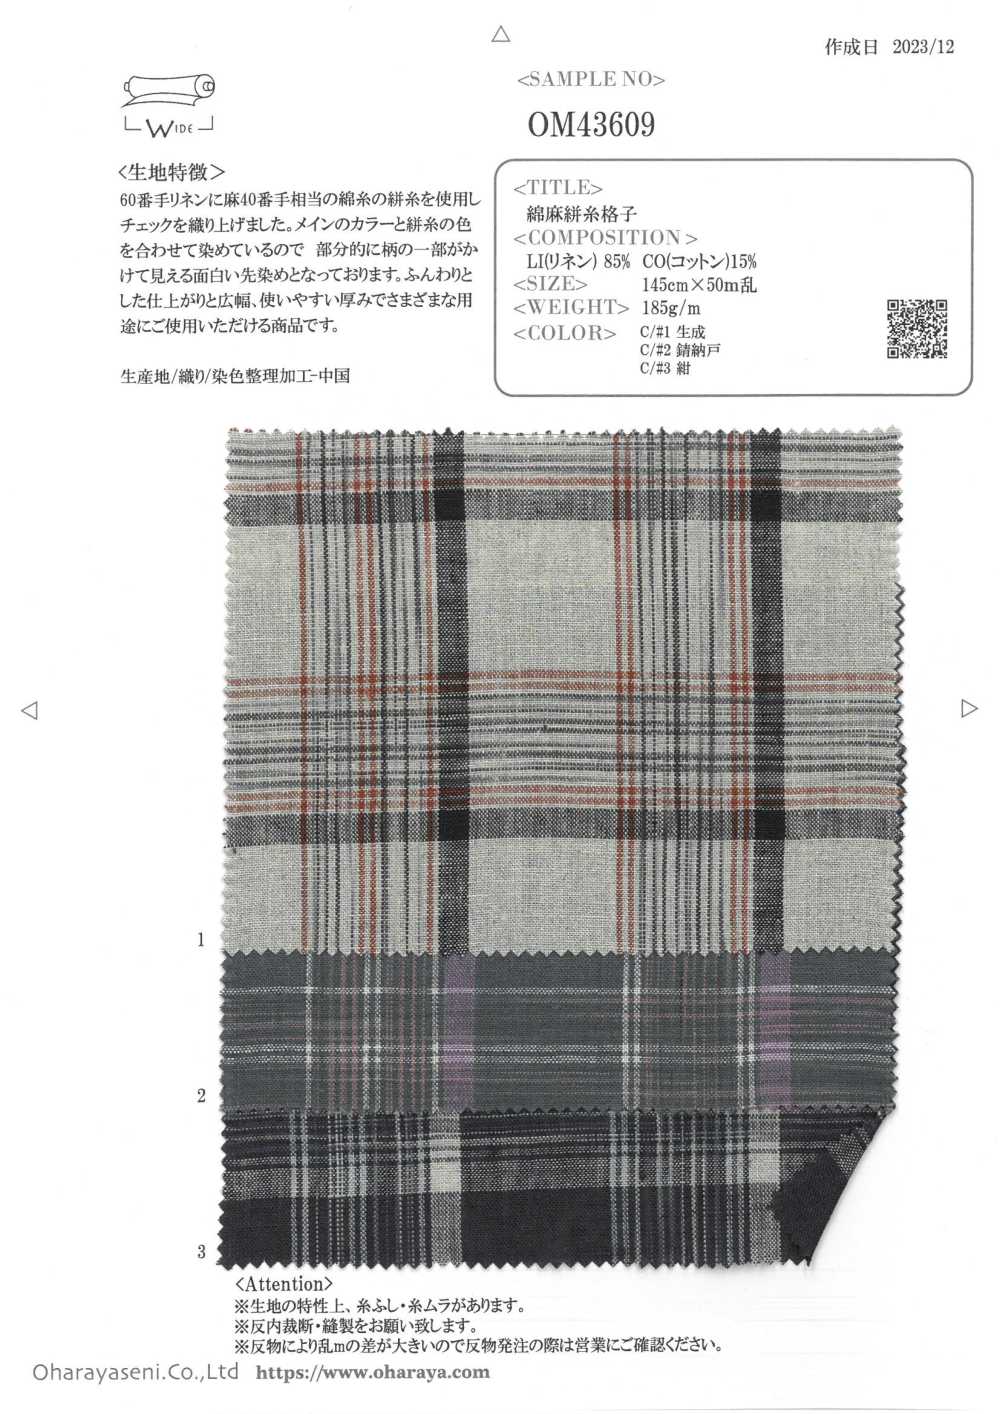 OM43609 Celosía De Hilo De Lino[Fabrica Textil] Oharayaseni